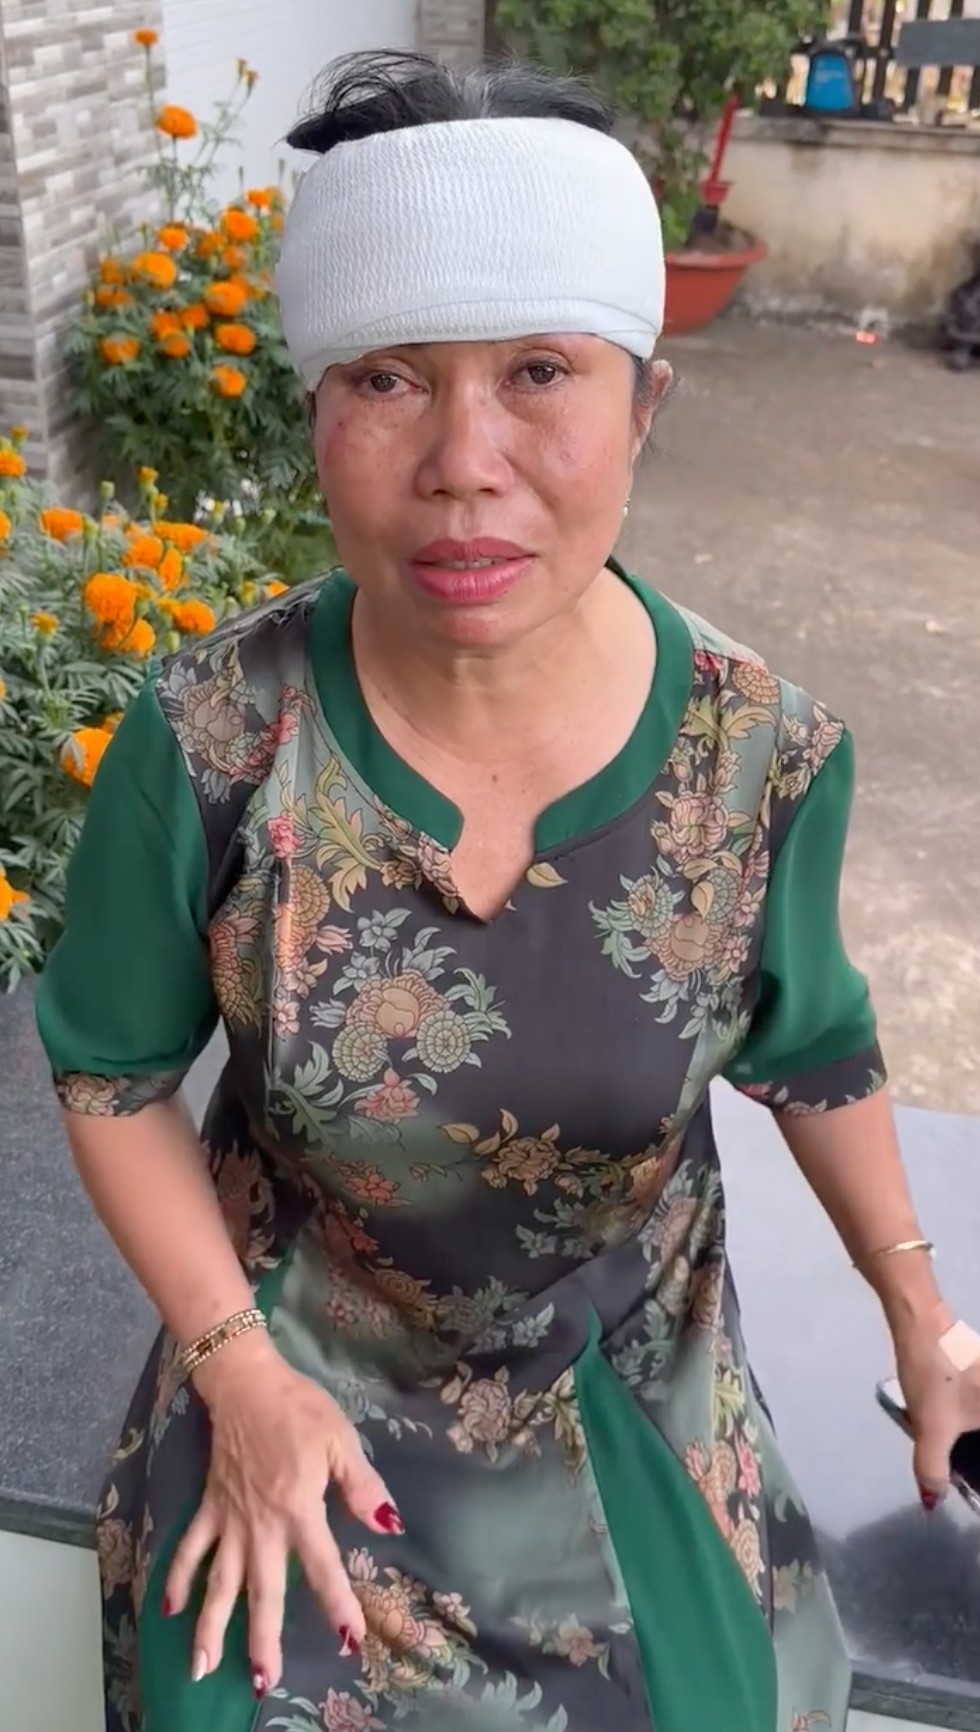 Mẹ Dương Lâm gặp sự cố ngay mùng 2 Tết, ra giêng tiếp tục đi khám - ảnh 1